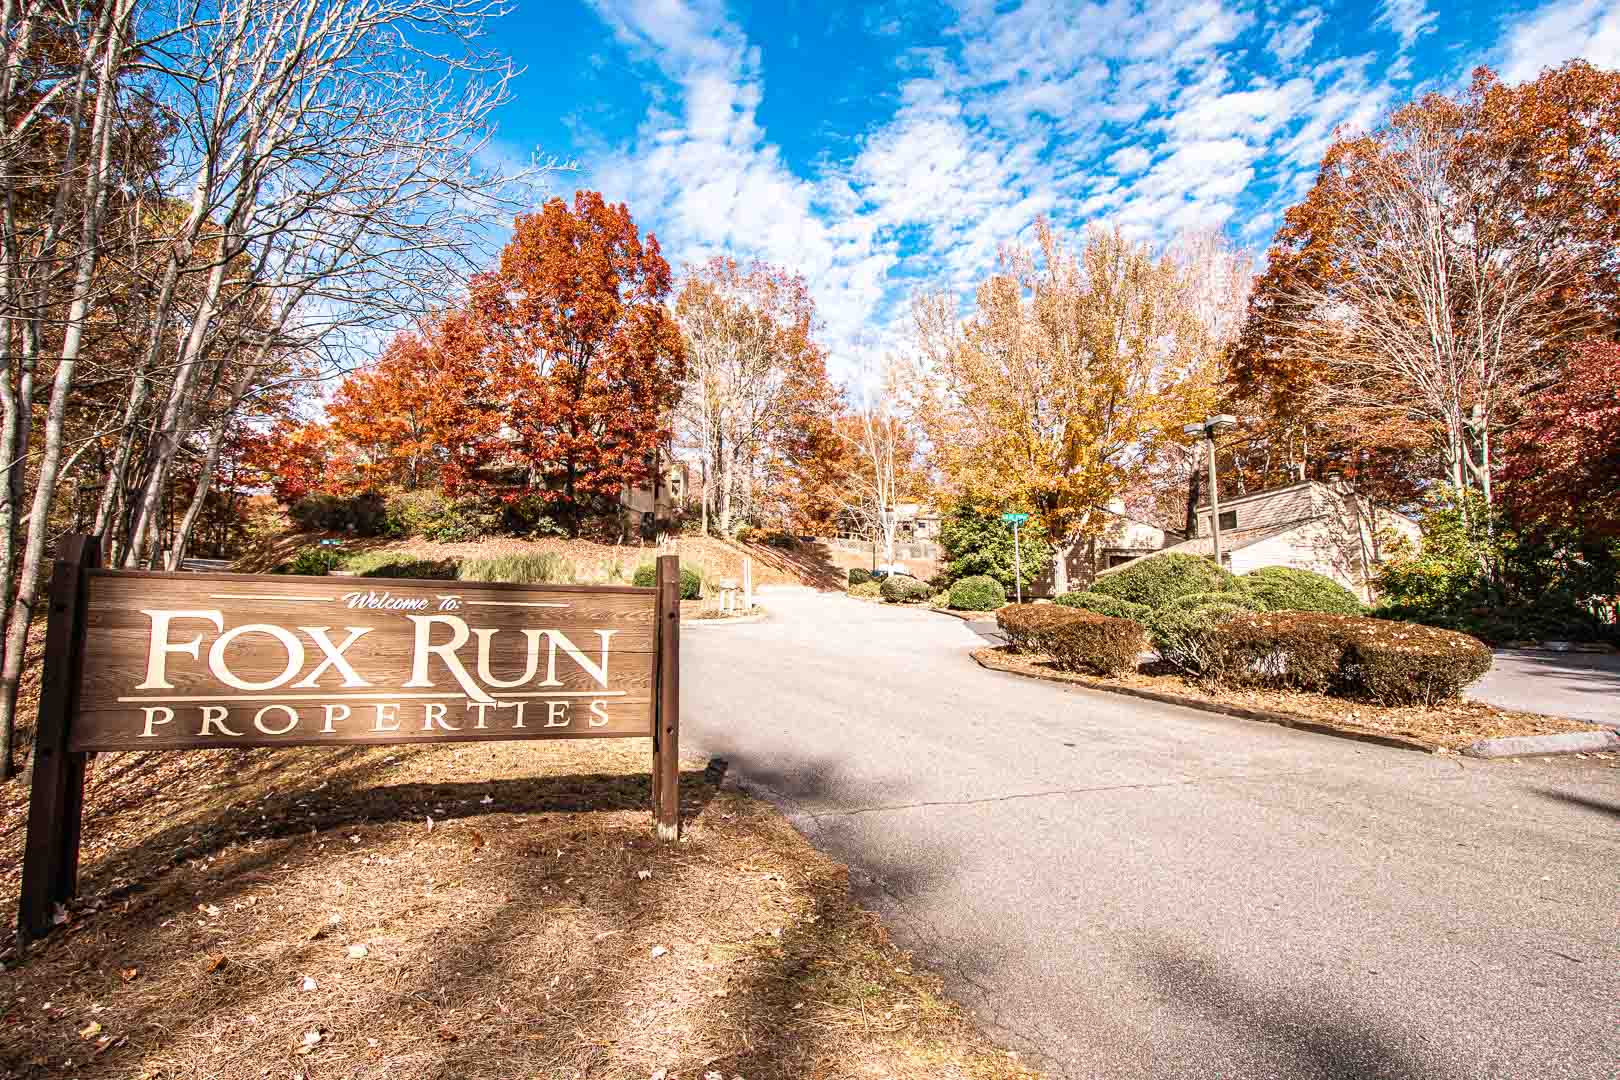 The resort signage at VRI's Fox Run Resort in North Carolina.